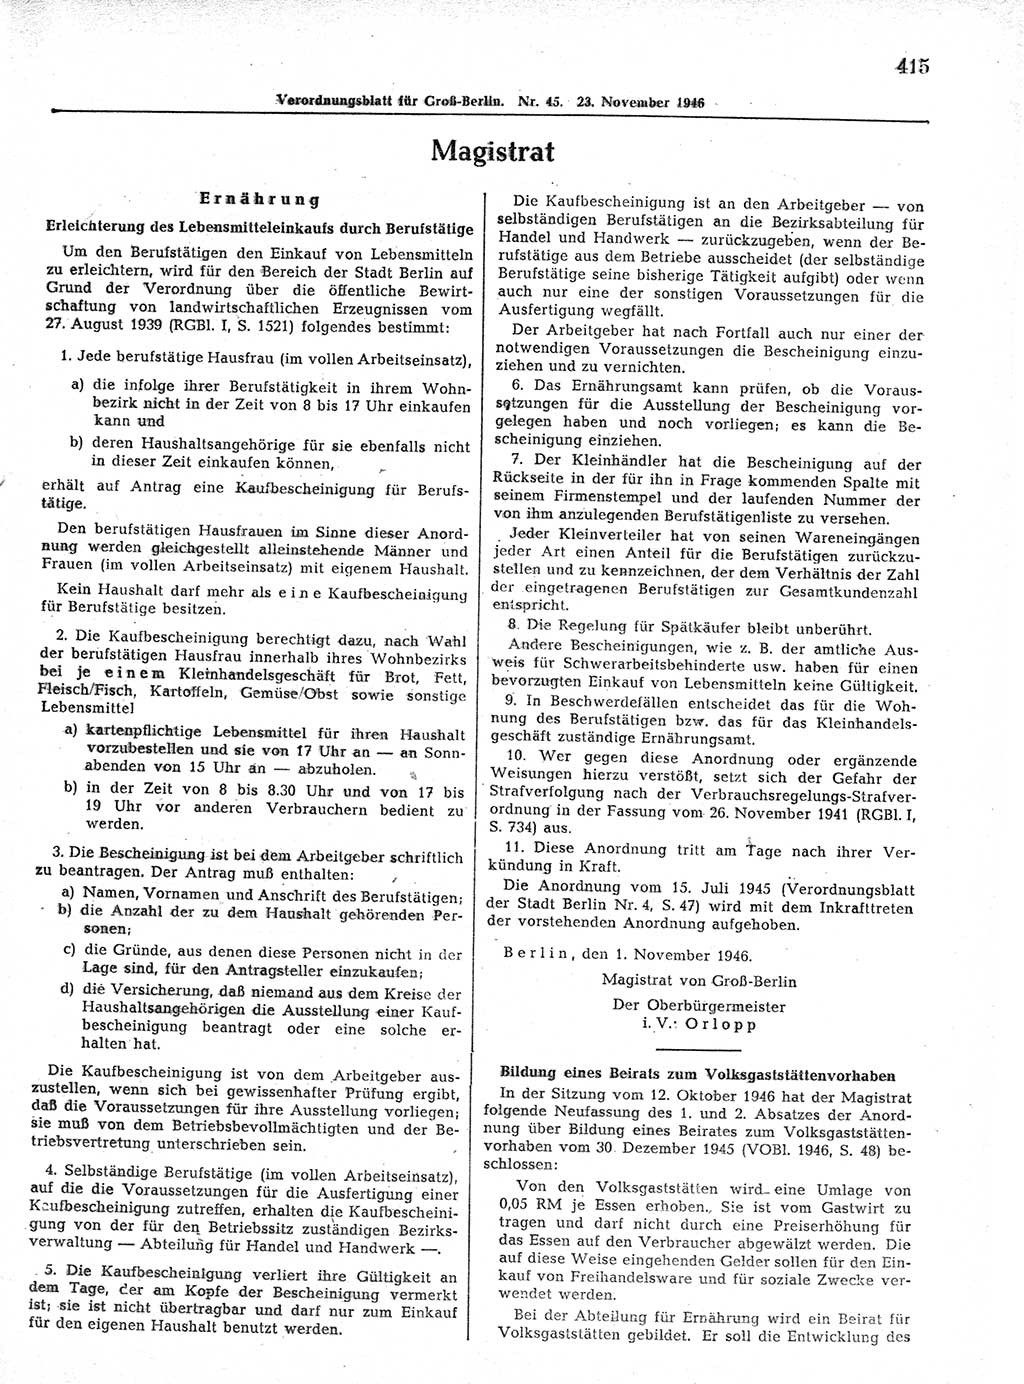 Verordnungsblatt (VOBl.) der Stadt Berlin, für Groß-Berlin 1946, Seite 415 (VOBl. Bln. 1946, S. 415)